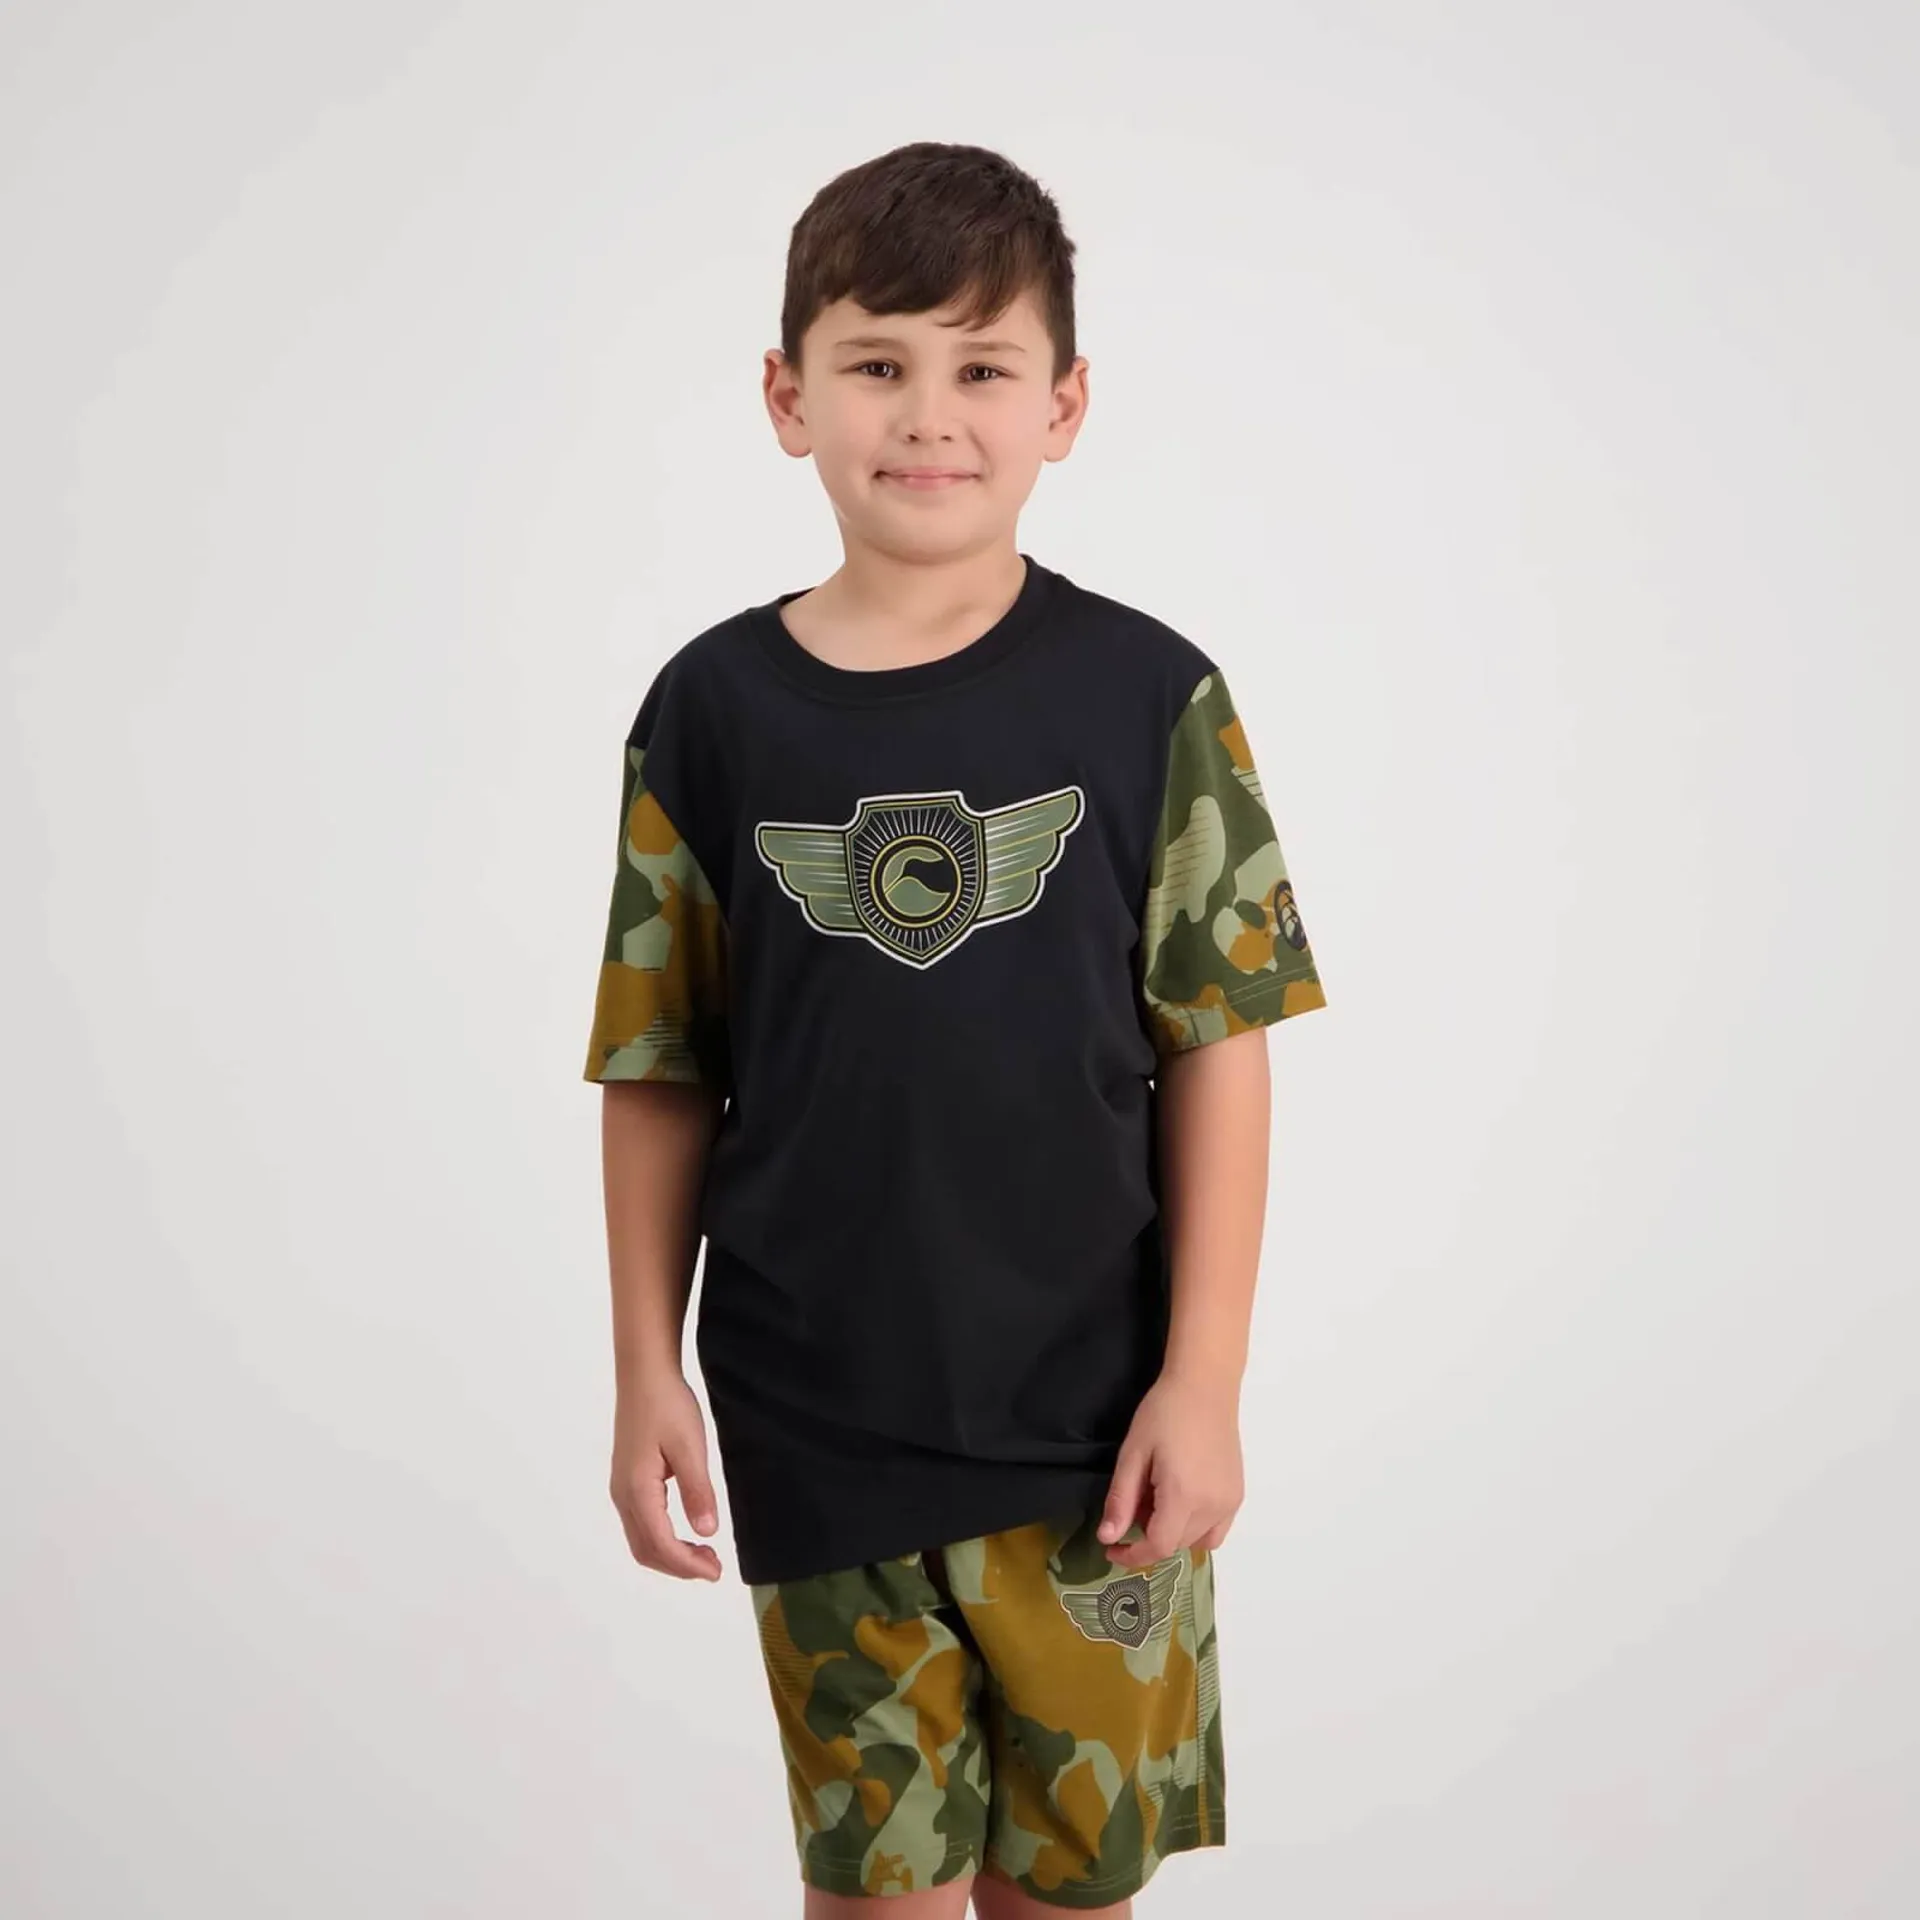 Kids Forcece Crest T-Shirt Jet Black